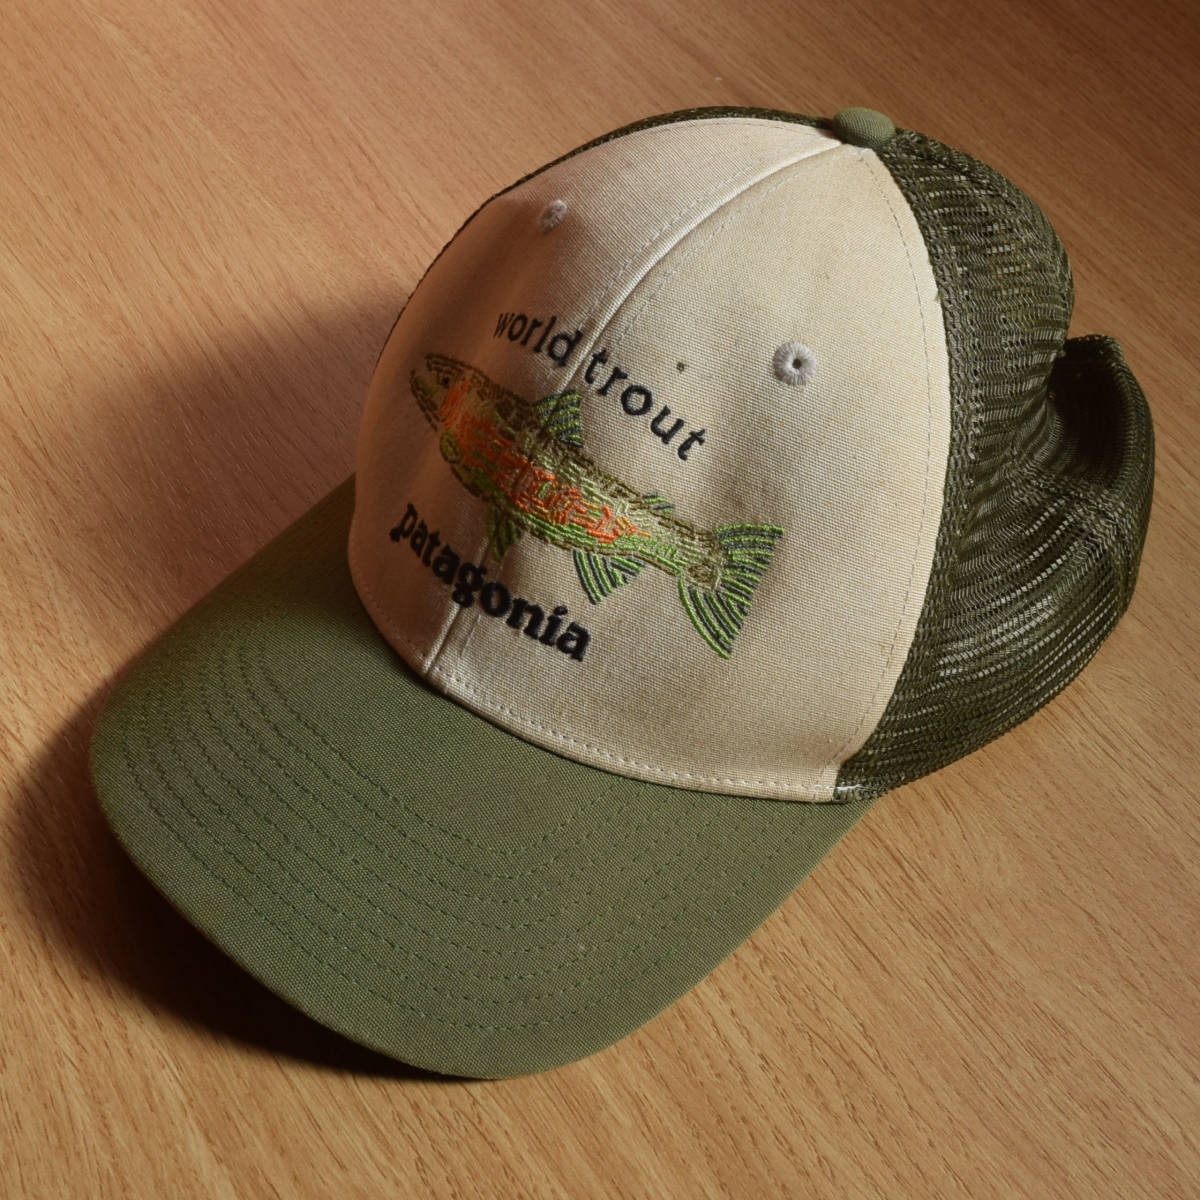 パタゴニア PATAGONIA Trout Cap トラッカーキャップ/ パタゴニア 帽子